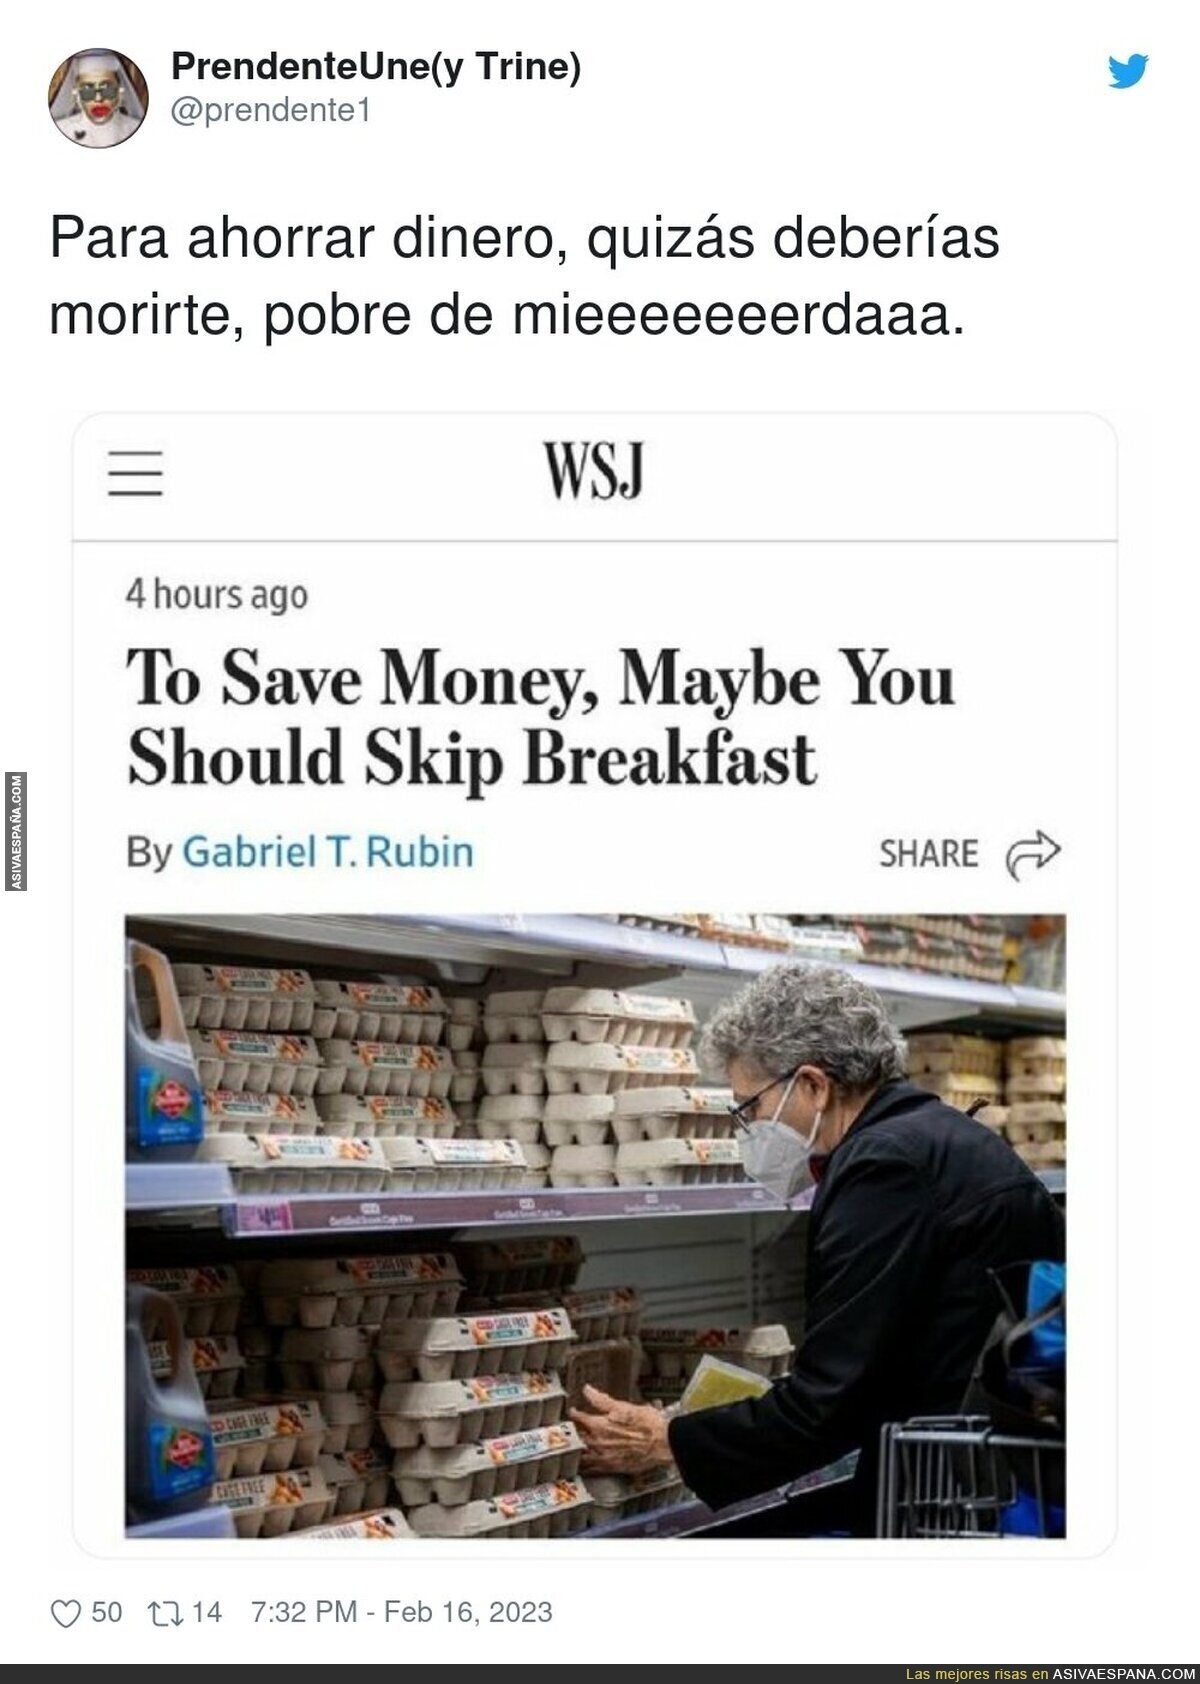 Los consejos del Wall Street Journal